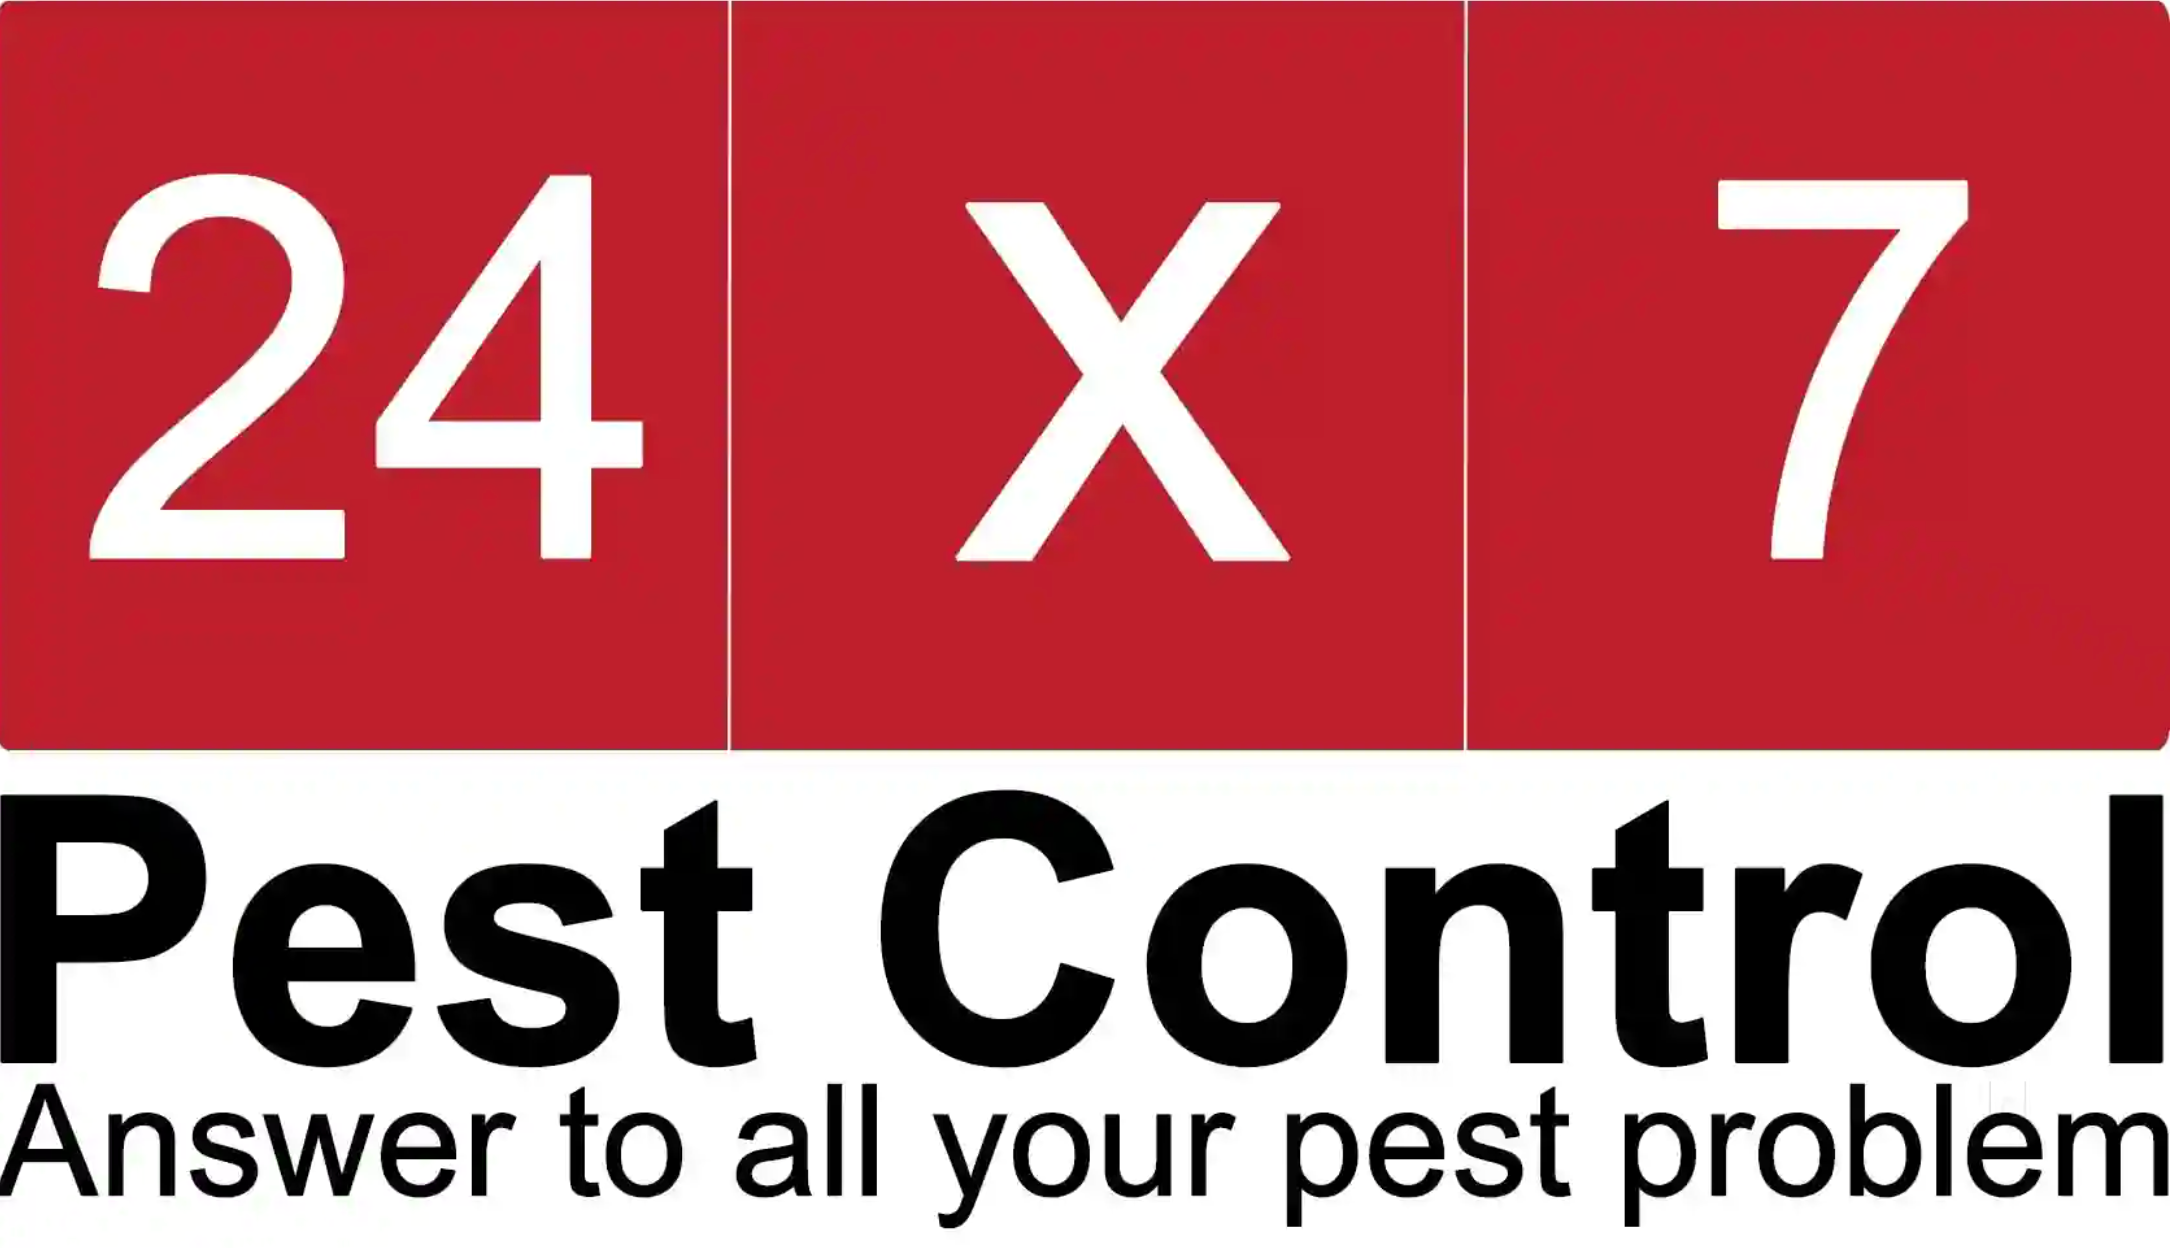 Pest Control Mumbai